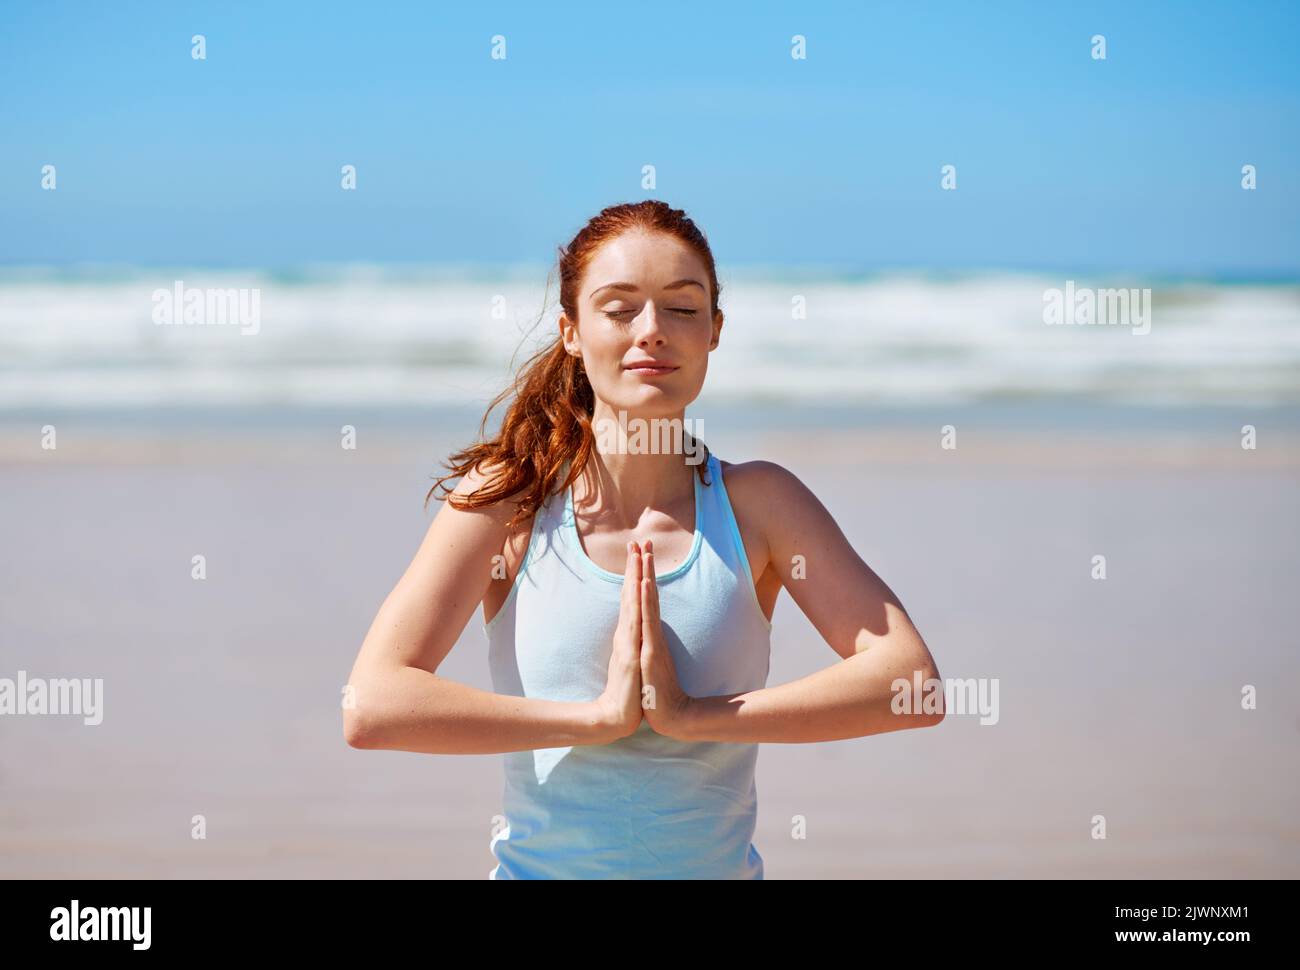 Wenn Sie Ihren Atem besitzen, kann niemand Ihre Ruhe stehlen. Eine junge Frau praktiziert ihre Yoga-Routine am Strand. Stockfoto